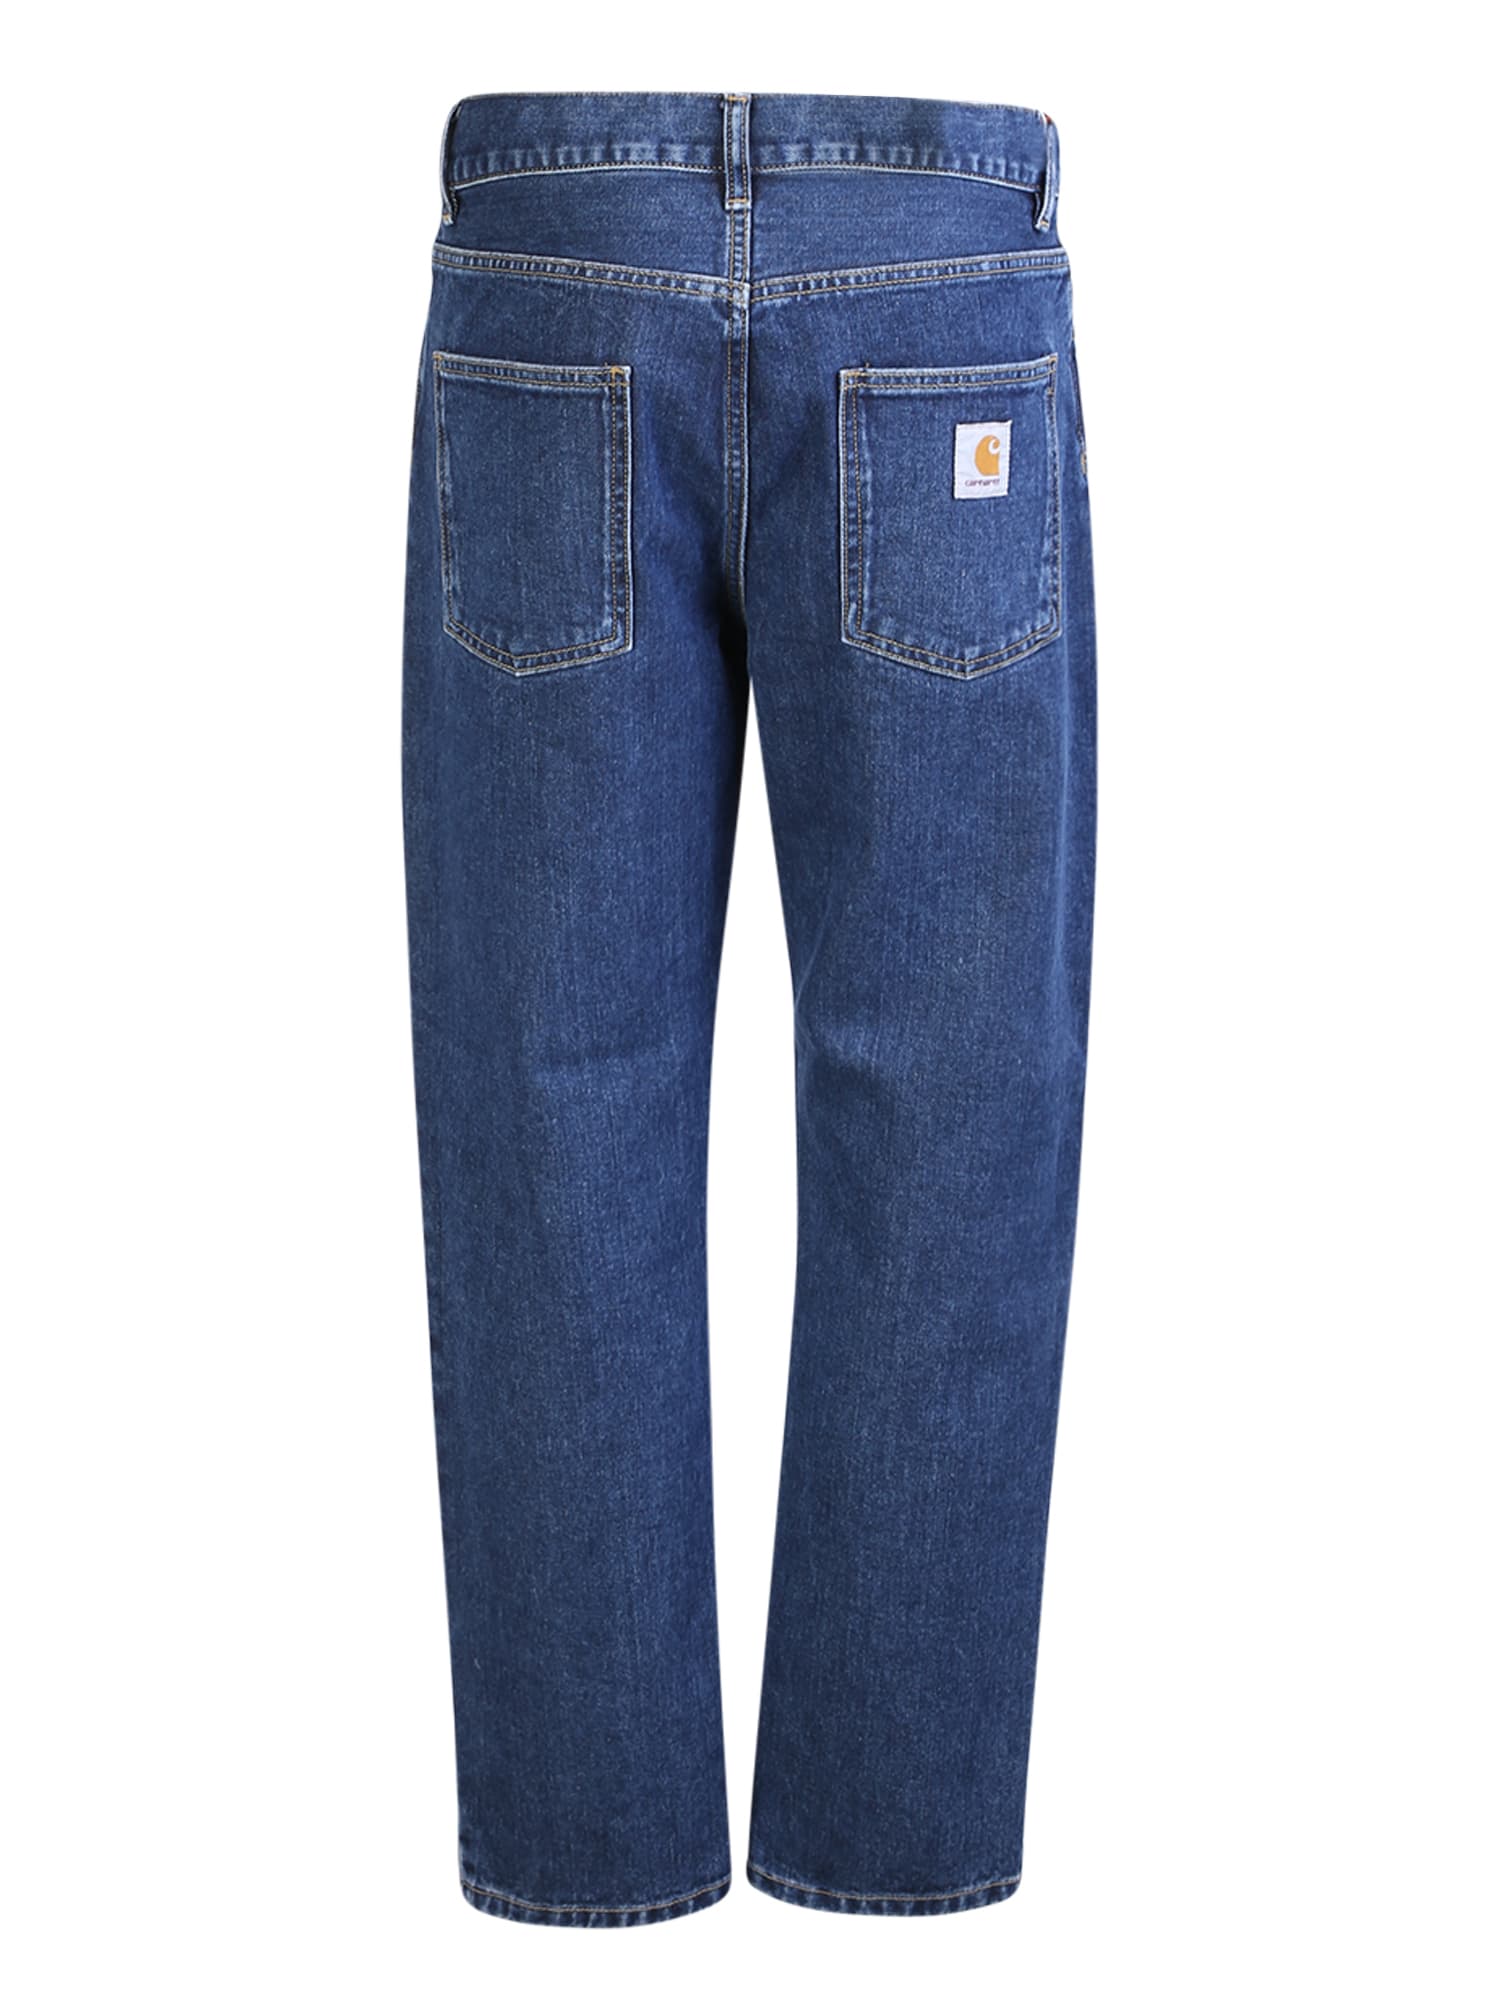 Shop Carhartt Newel Jeans Blue